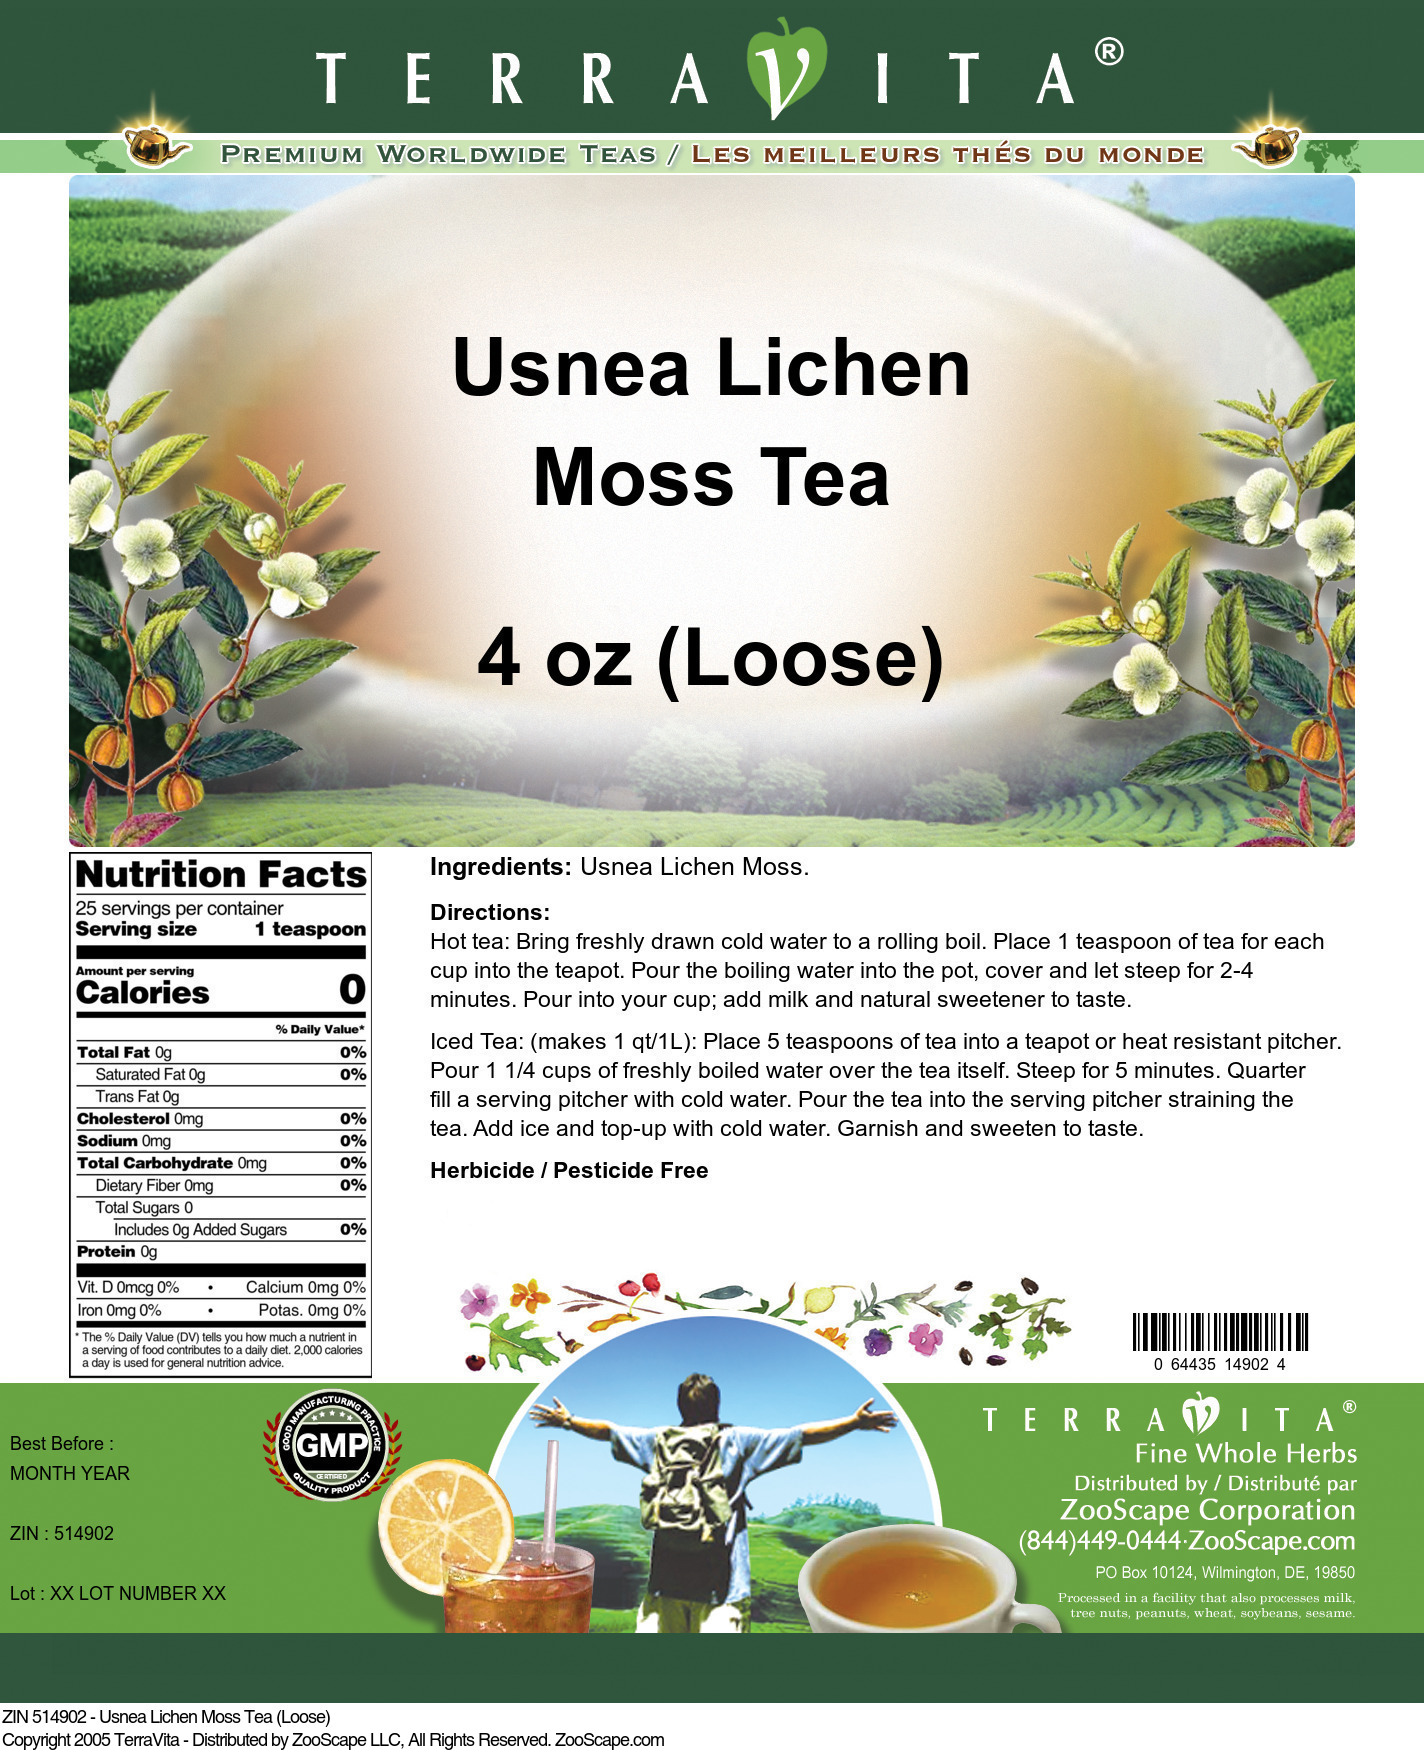 Usnea Lichen Moss Tea (Loose) - Label